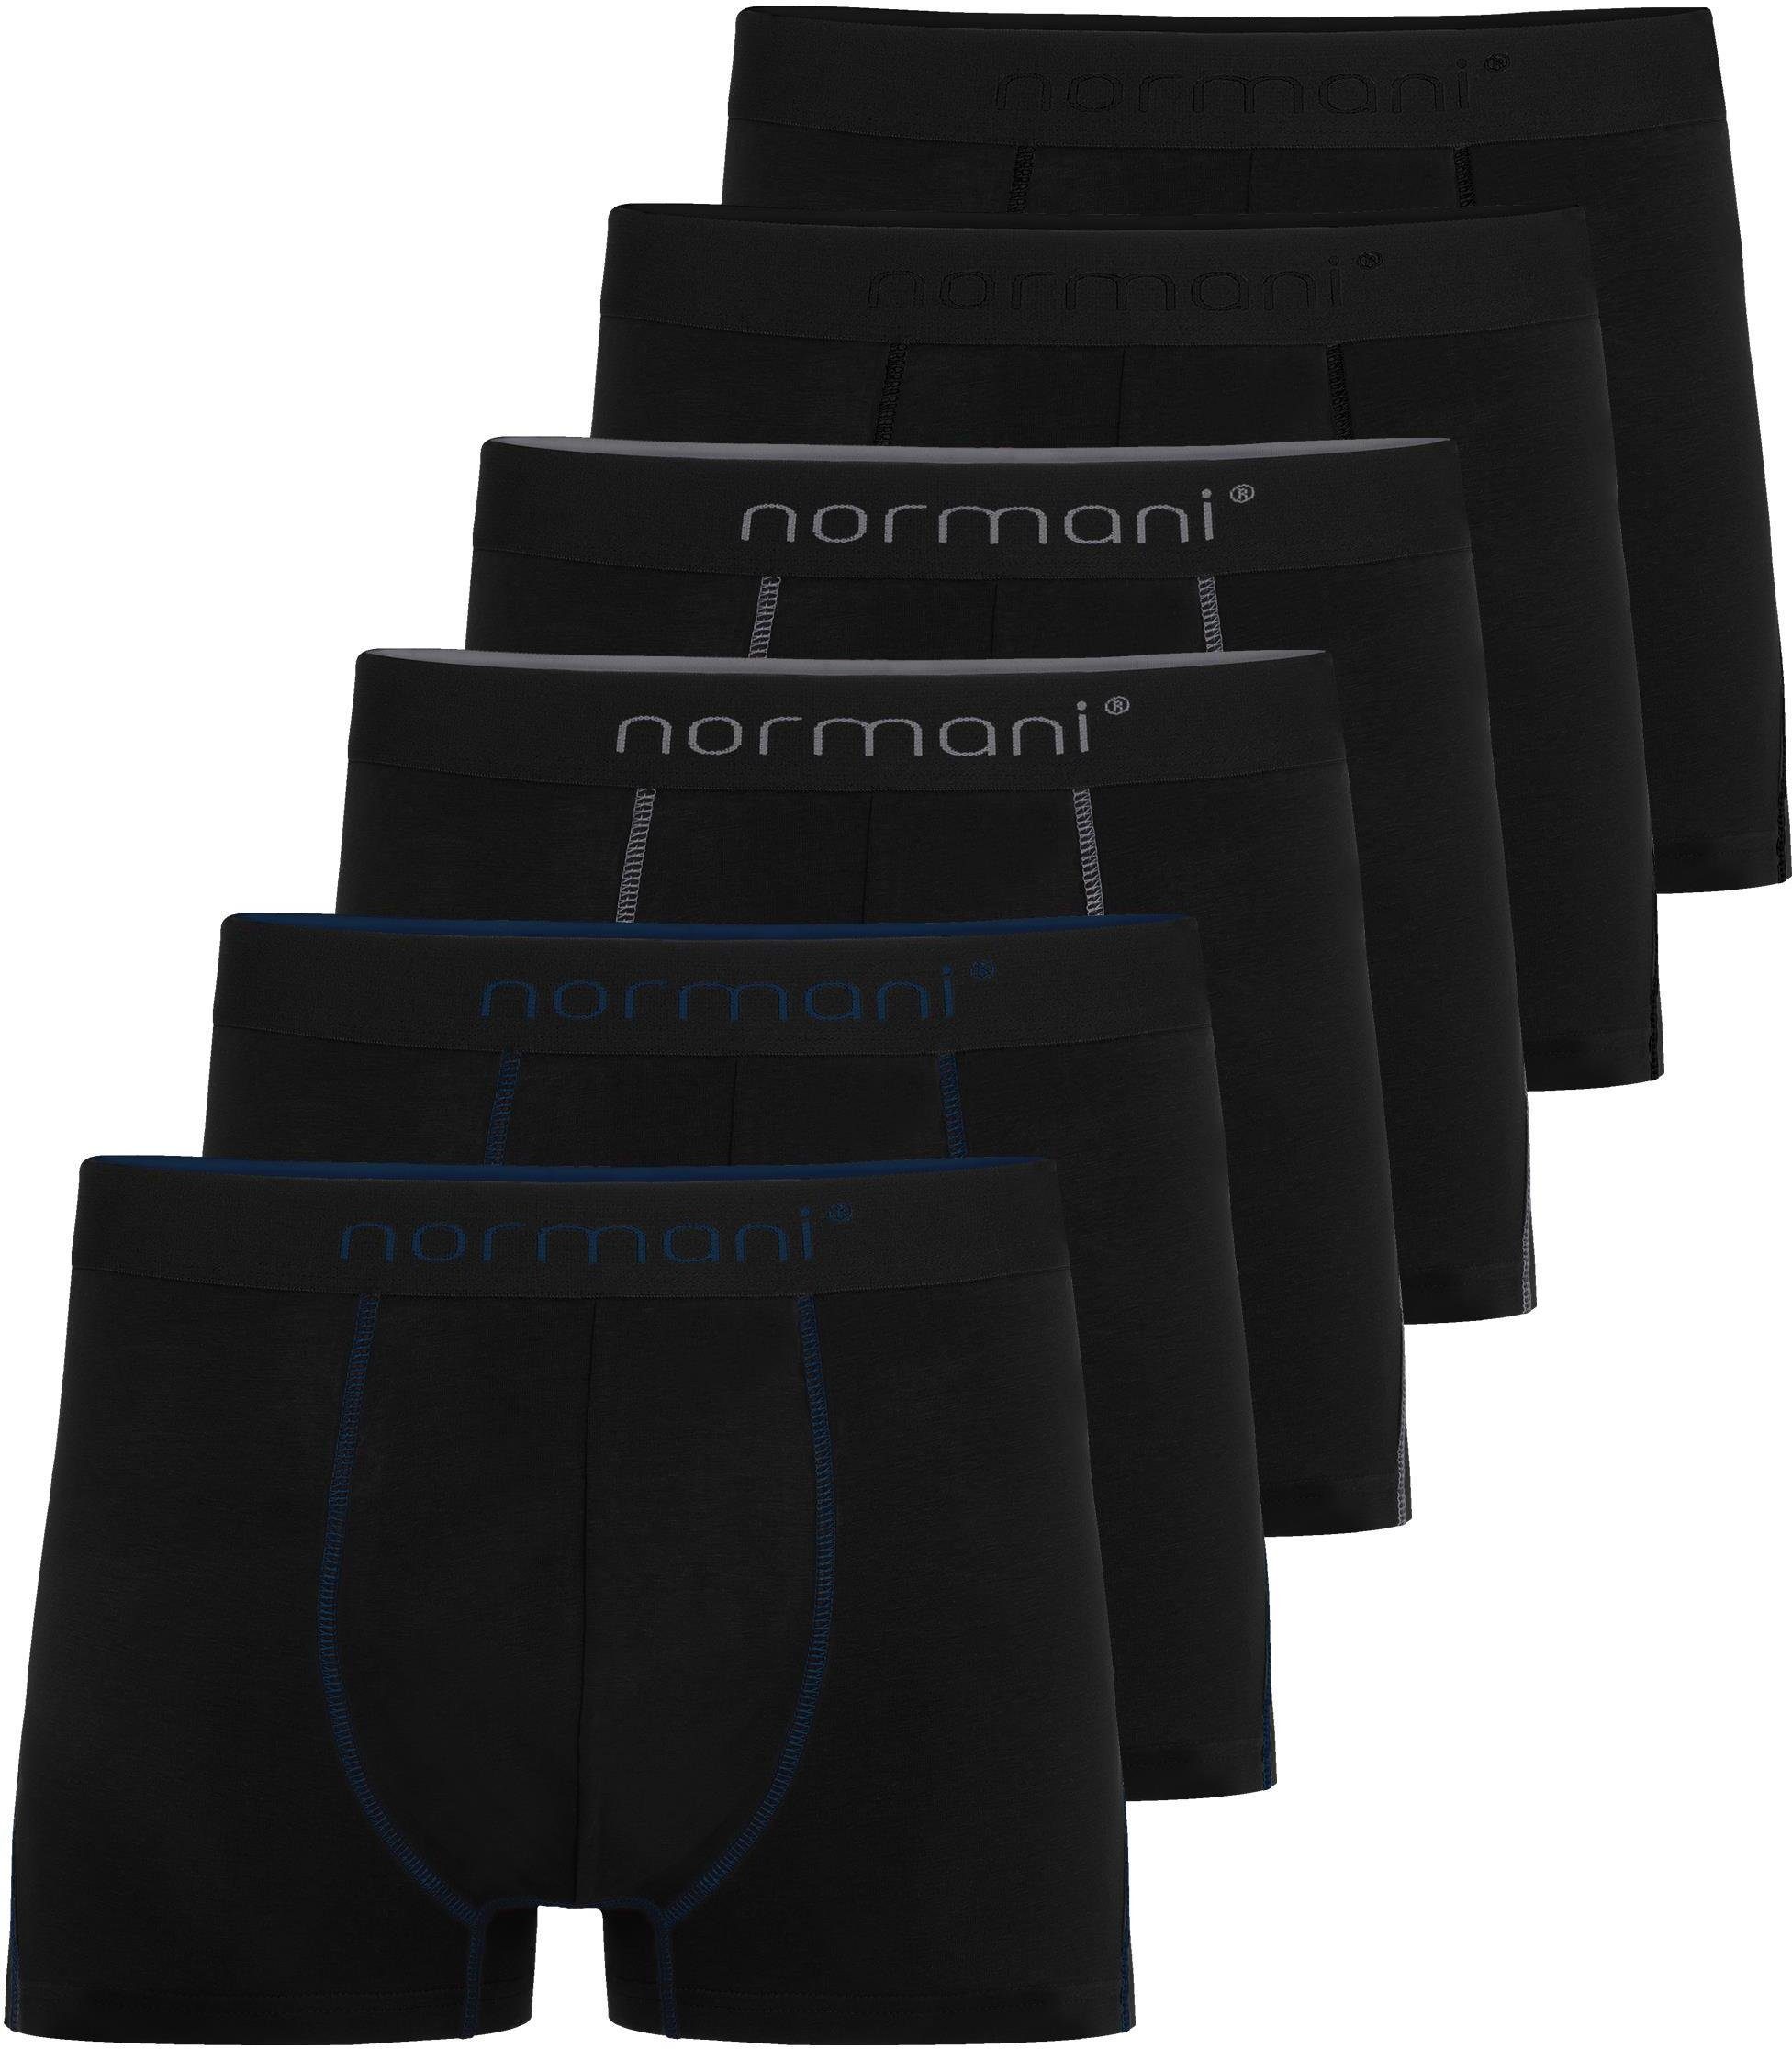 normani Boxershorts 6x Herren Baumwoll-Boxershorts Unterhose aus atmungsaktiver Baumwolle für Männer Dunkelblau/Grau/Schwarz